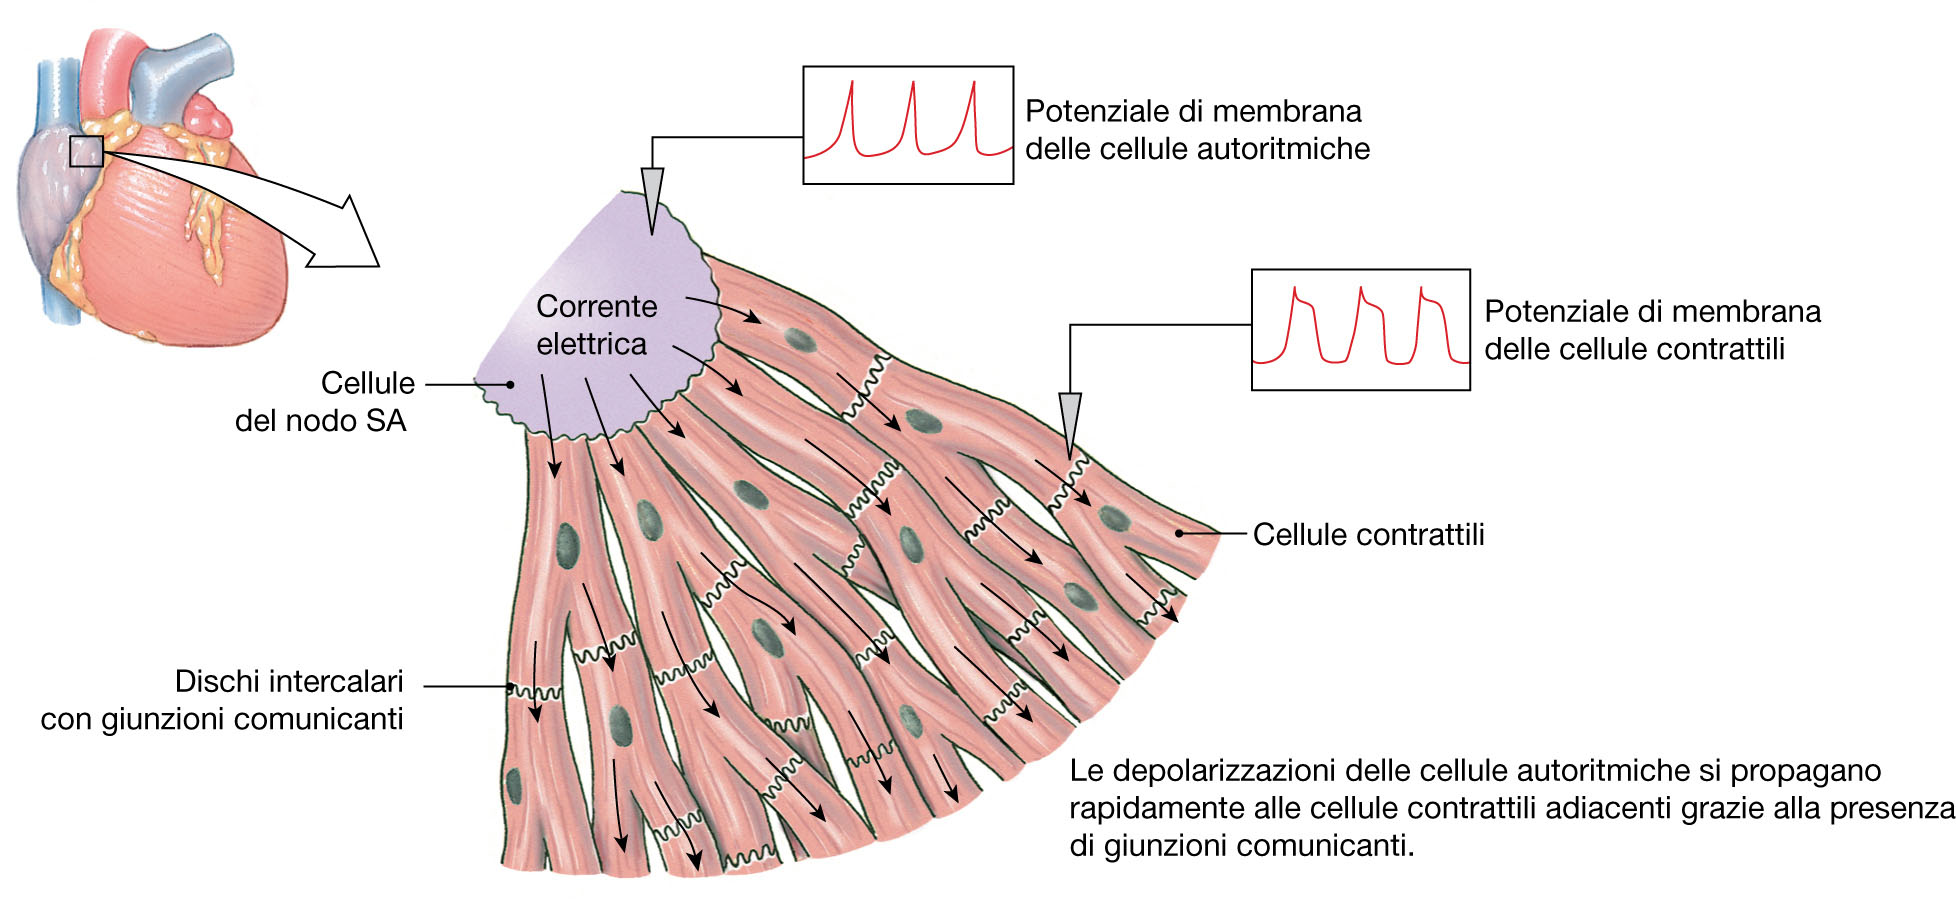 Il sistema cardiovascolare: il sistema di conduzione cardiaca Cardiac conduction system.